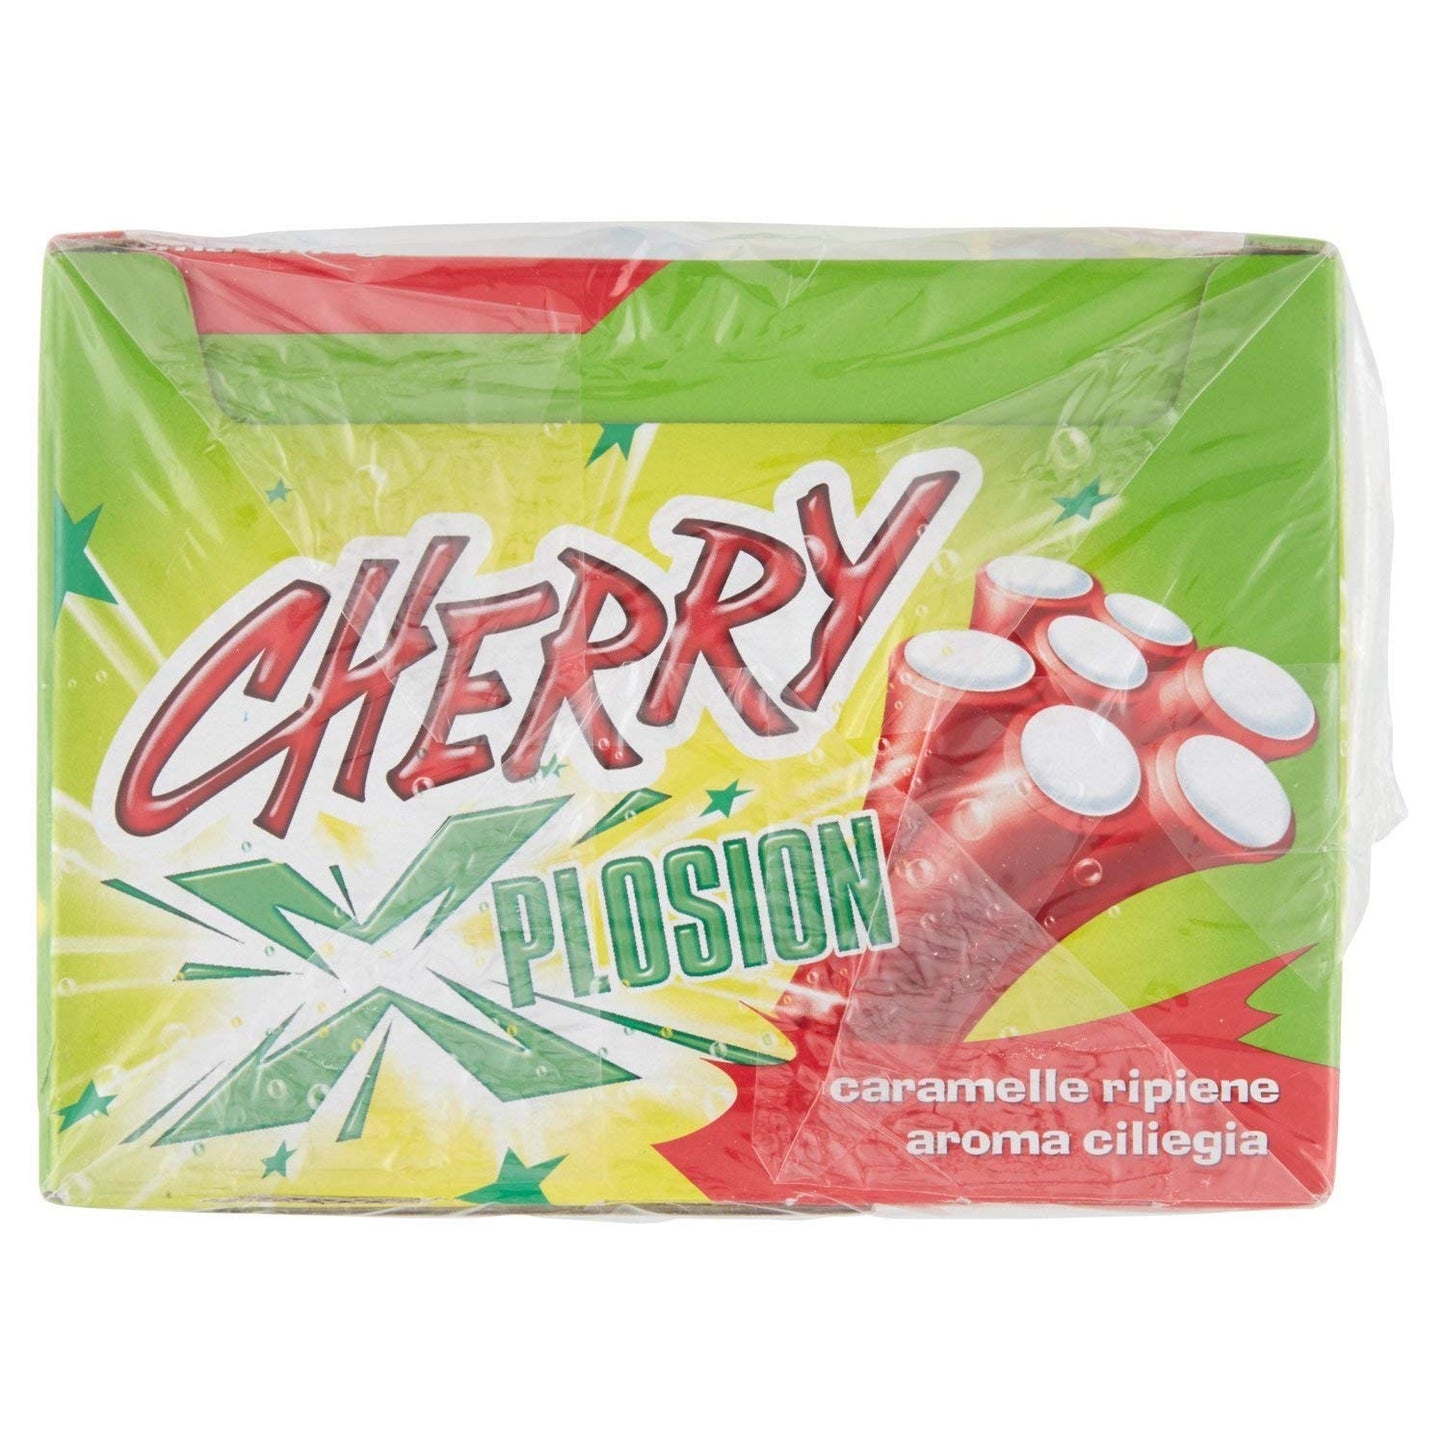 Gelco Cherry Xplosion, Caramella Gommosa, confezione da 150 pezzi